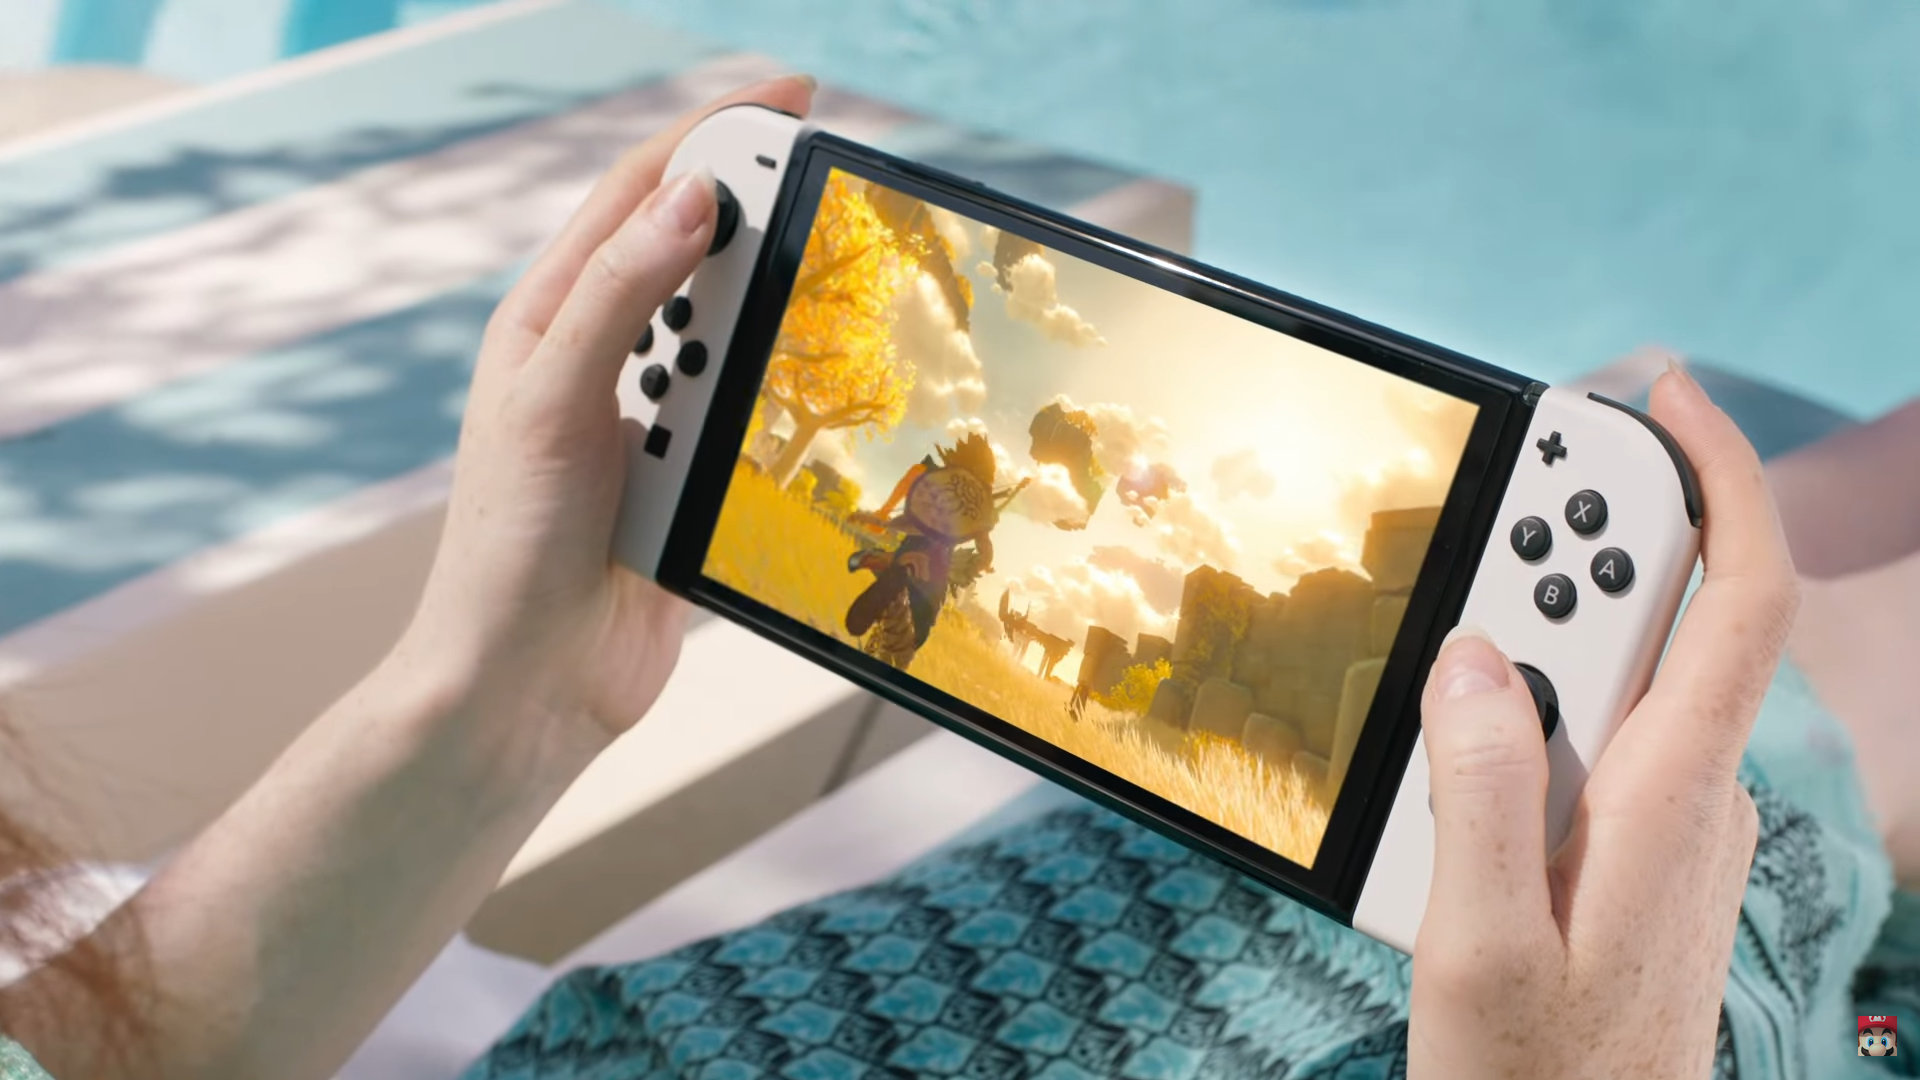 Nintendo Switch OLED, elde taşınabilir oyun bilgisayarlarındaki artışla rekabet edebilir mi?